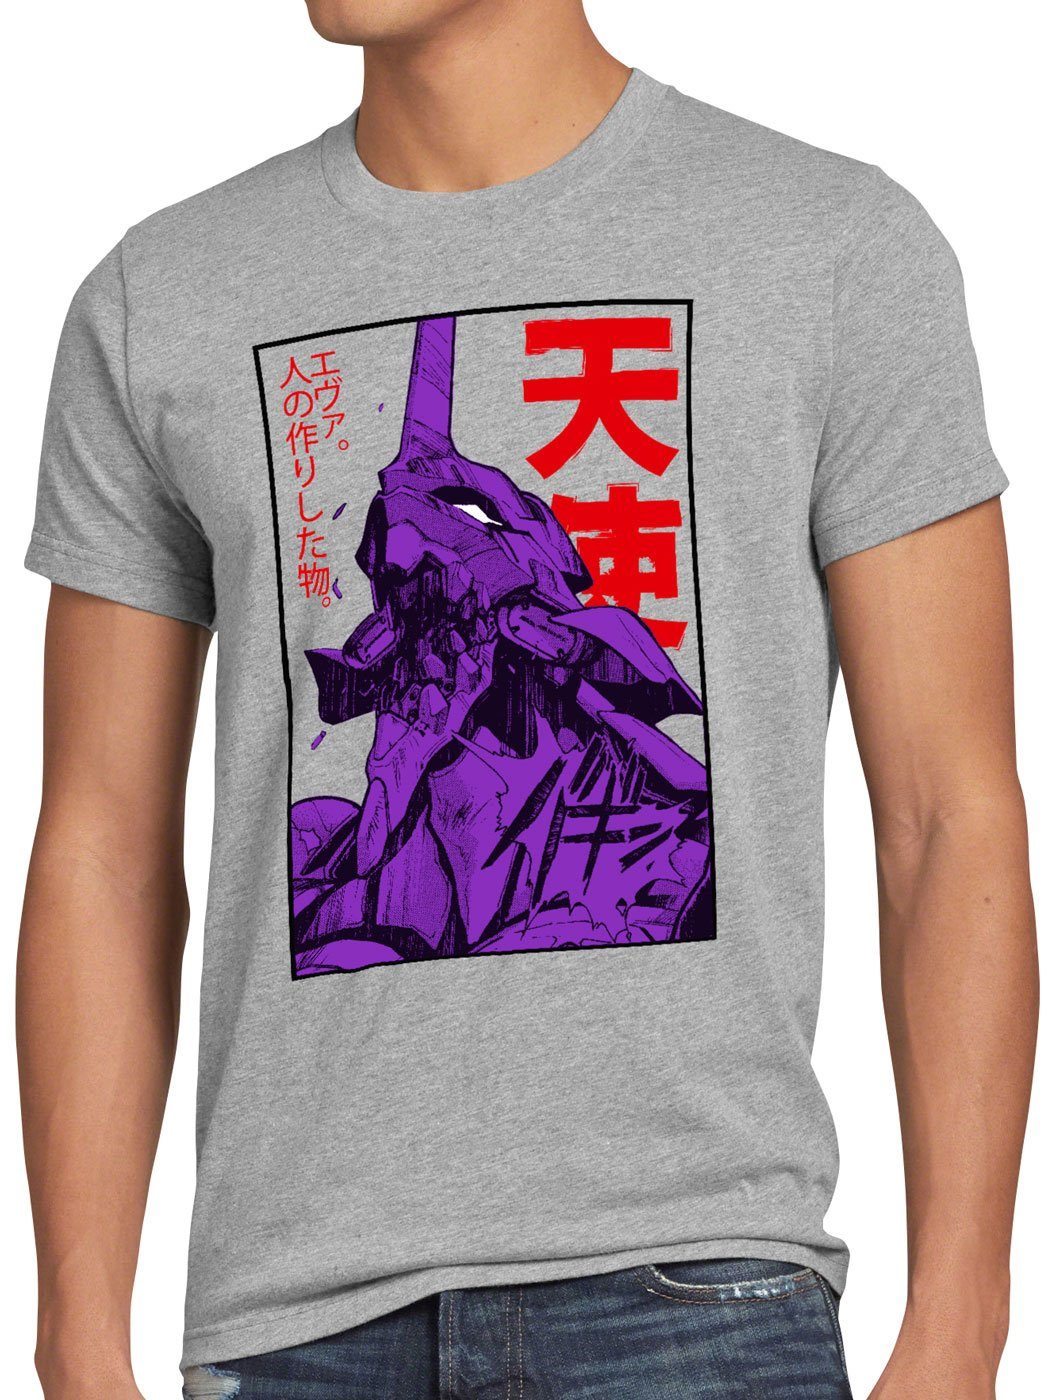 style3 Print-Shirt Herren T-Shirt Neo-Tokyo 3 Rage evangelion anime japanisch grau meliert